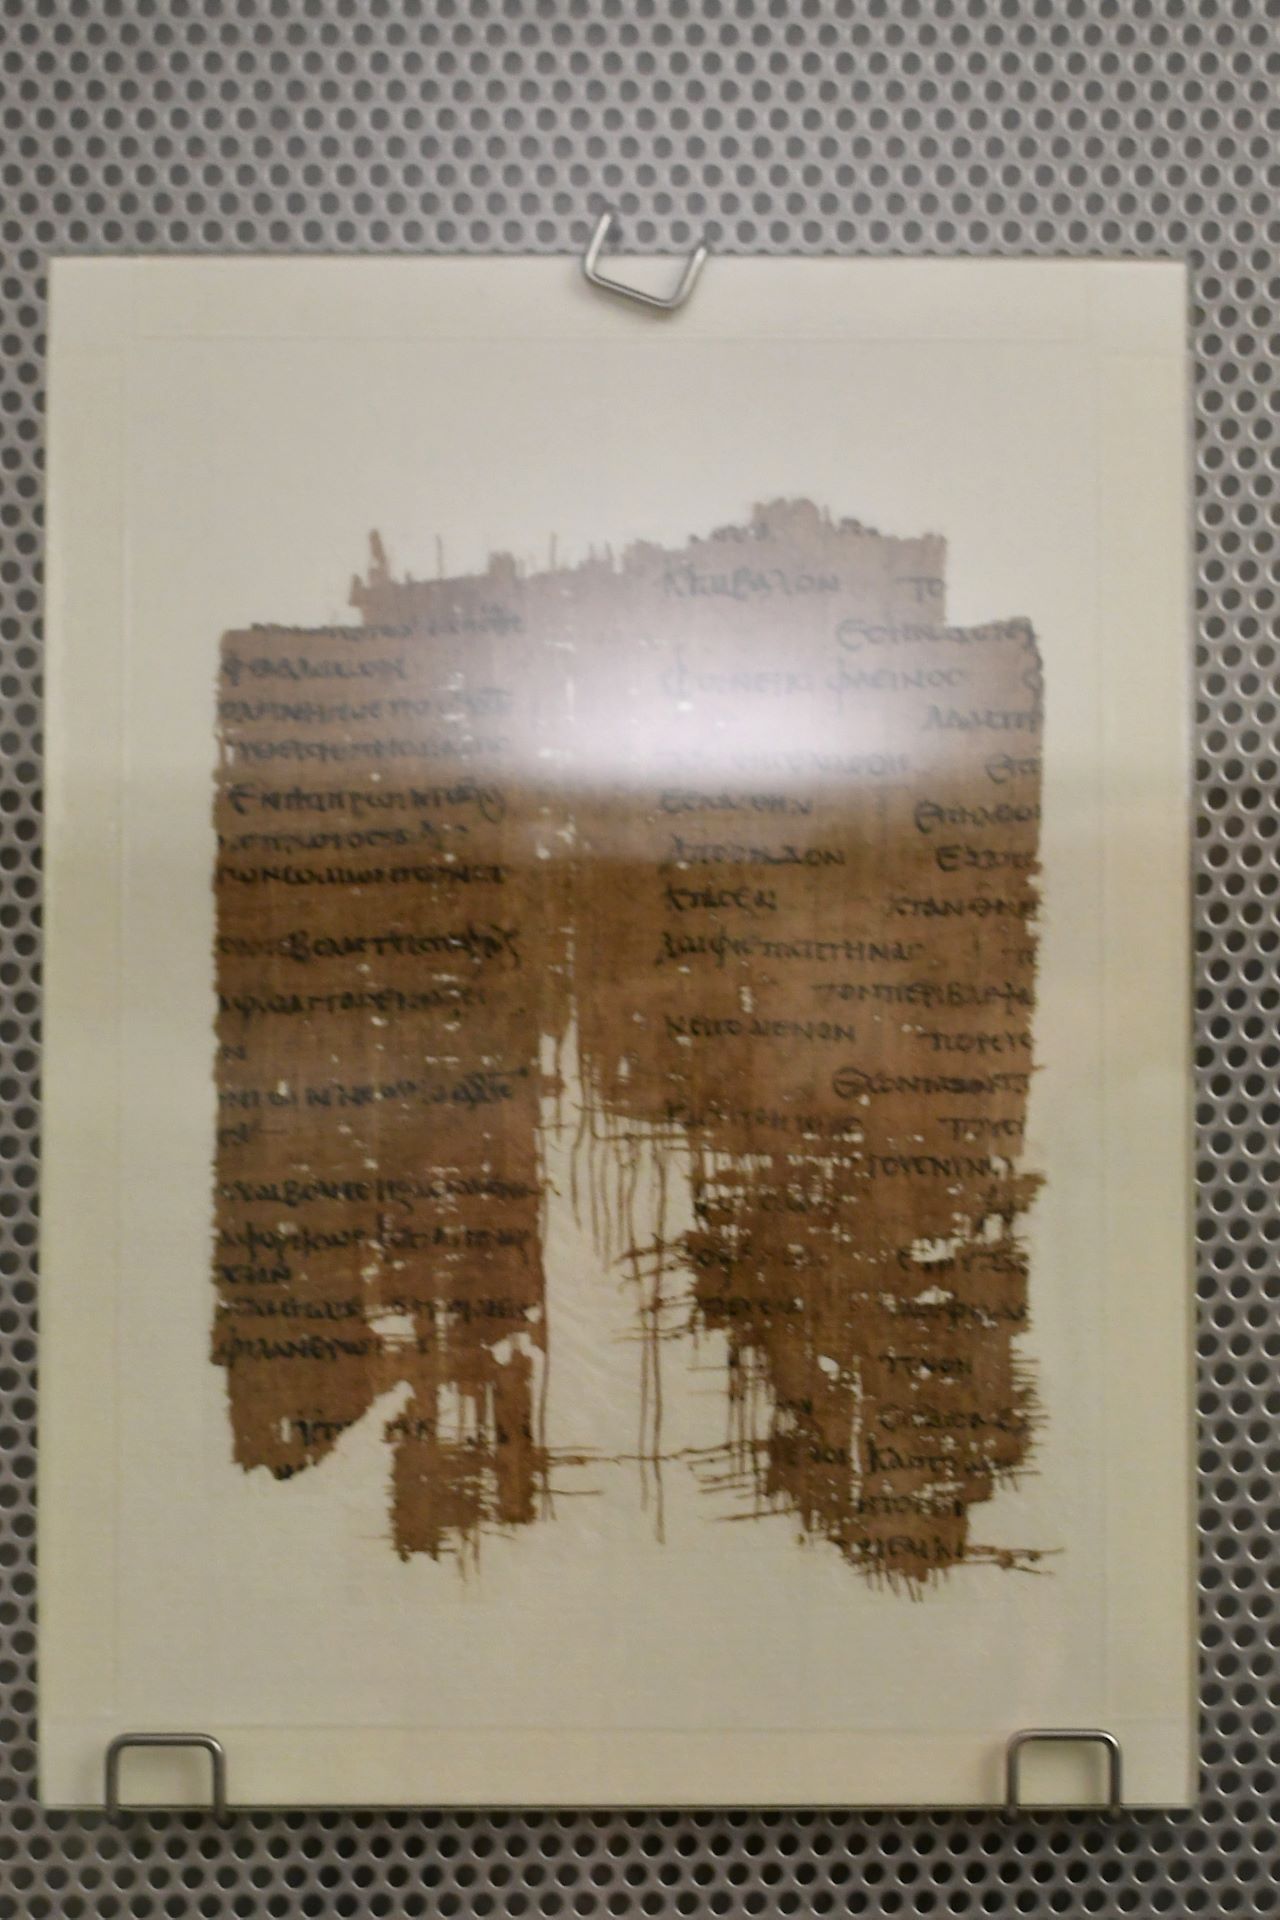 blog:2018-11-17-texte-aus-ferner-zeit:2018-11-17-wien-papyrusmuseum-112b.jpg